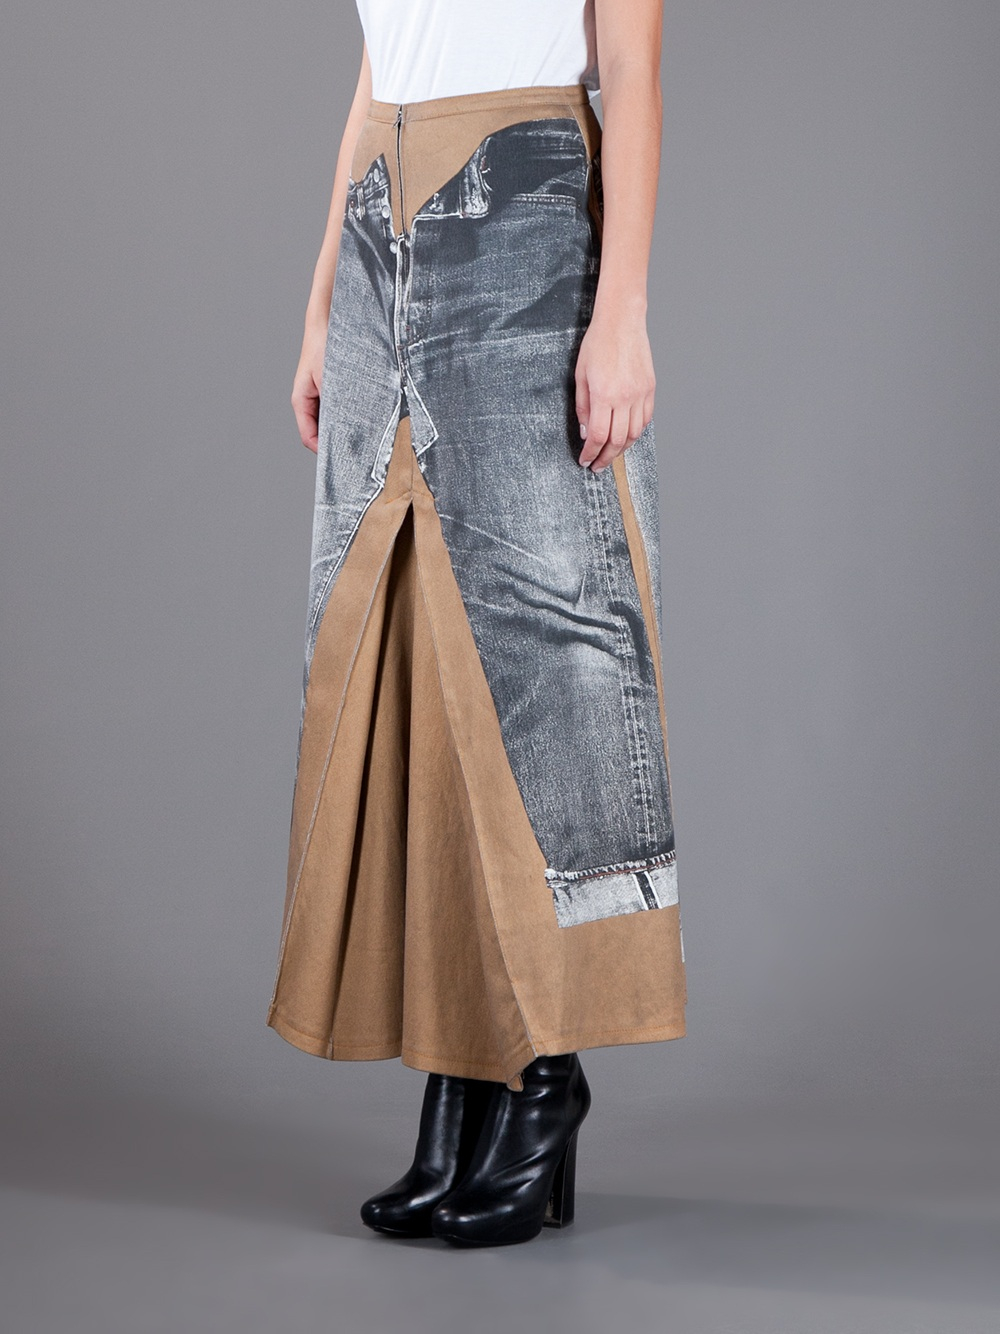 Jean Paul Gaultier Trompe L'Oeil Skirt in Gray | Lyst